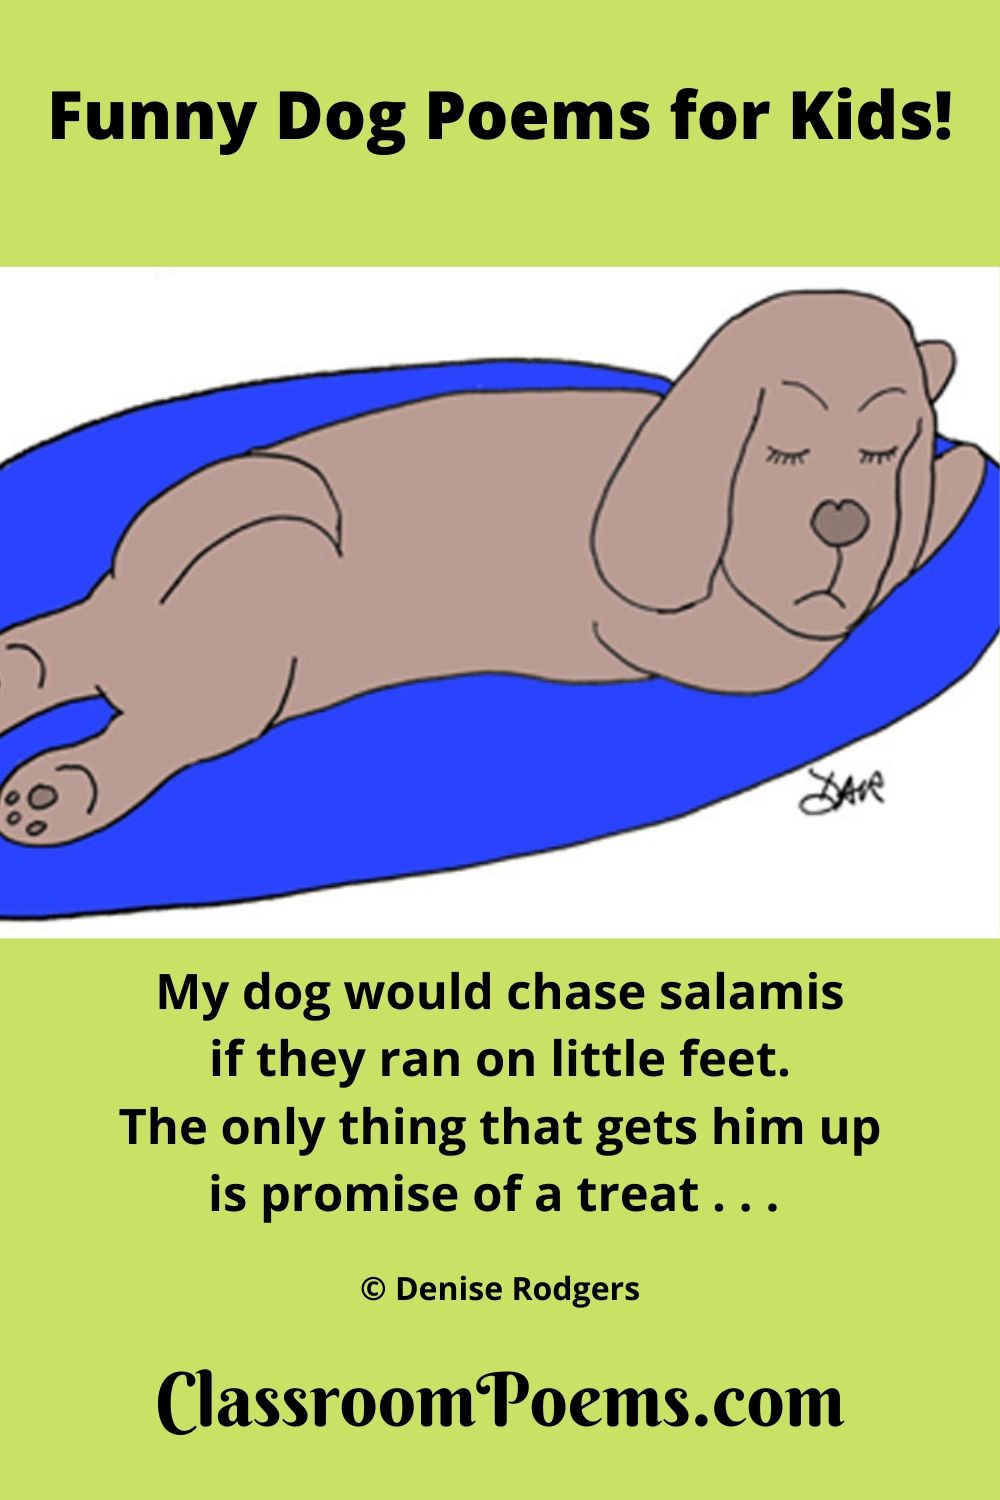 sleeping dog, napping dog, dog on rug, funny dog poems